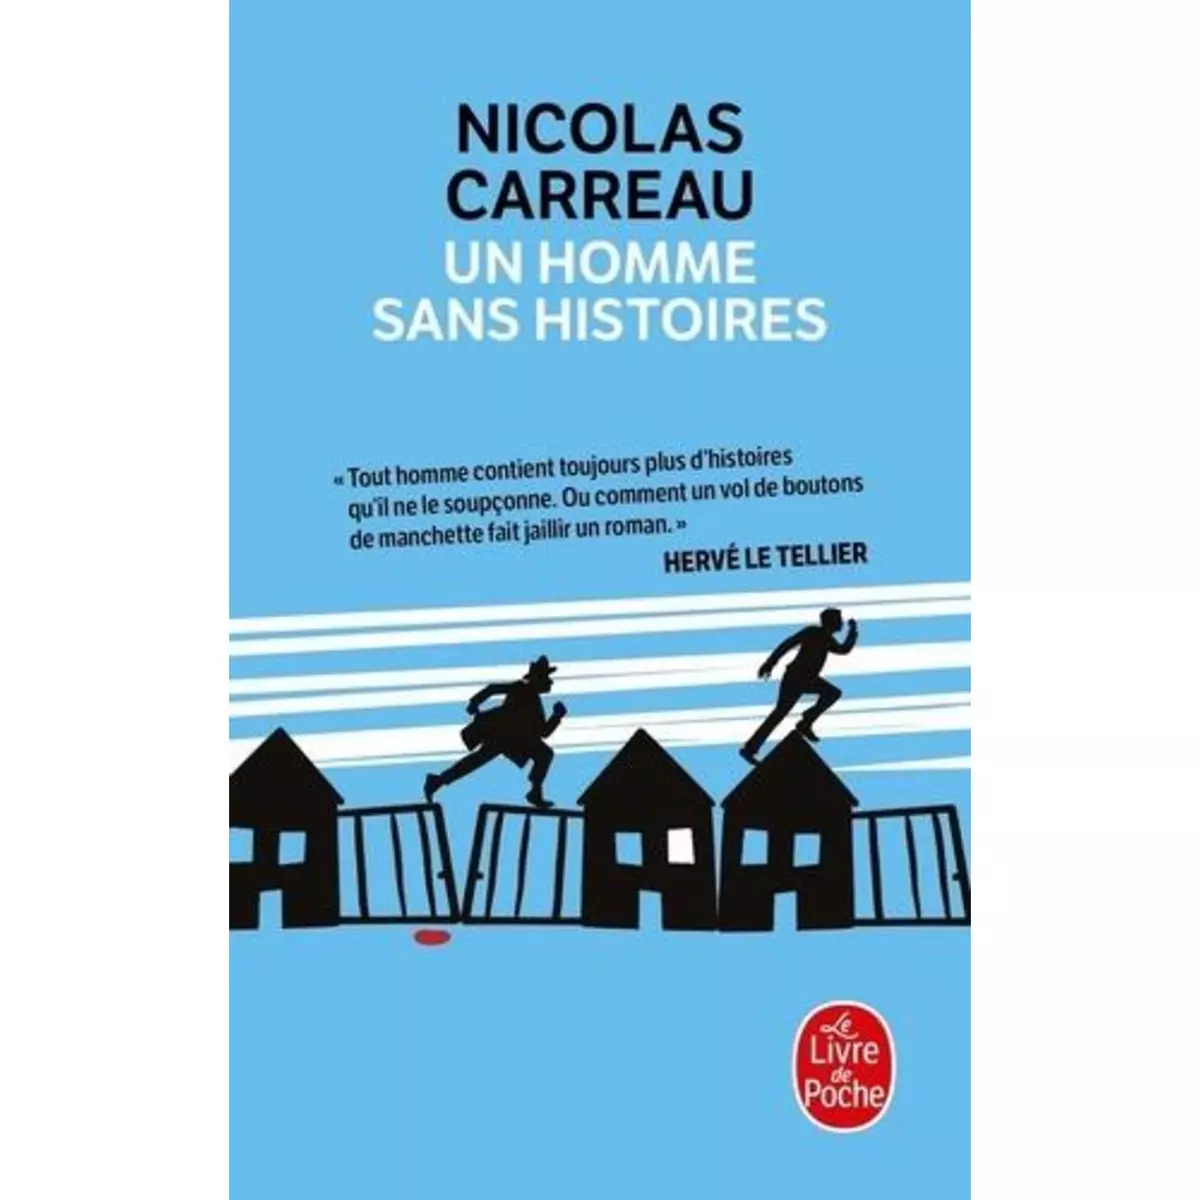  UN HOMME SANS HISTOIRES, Carreau Nicolas